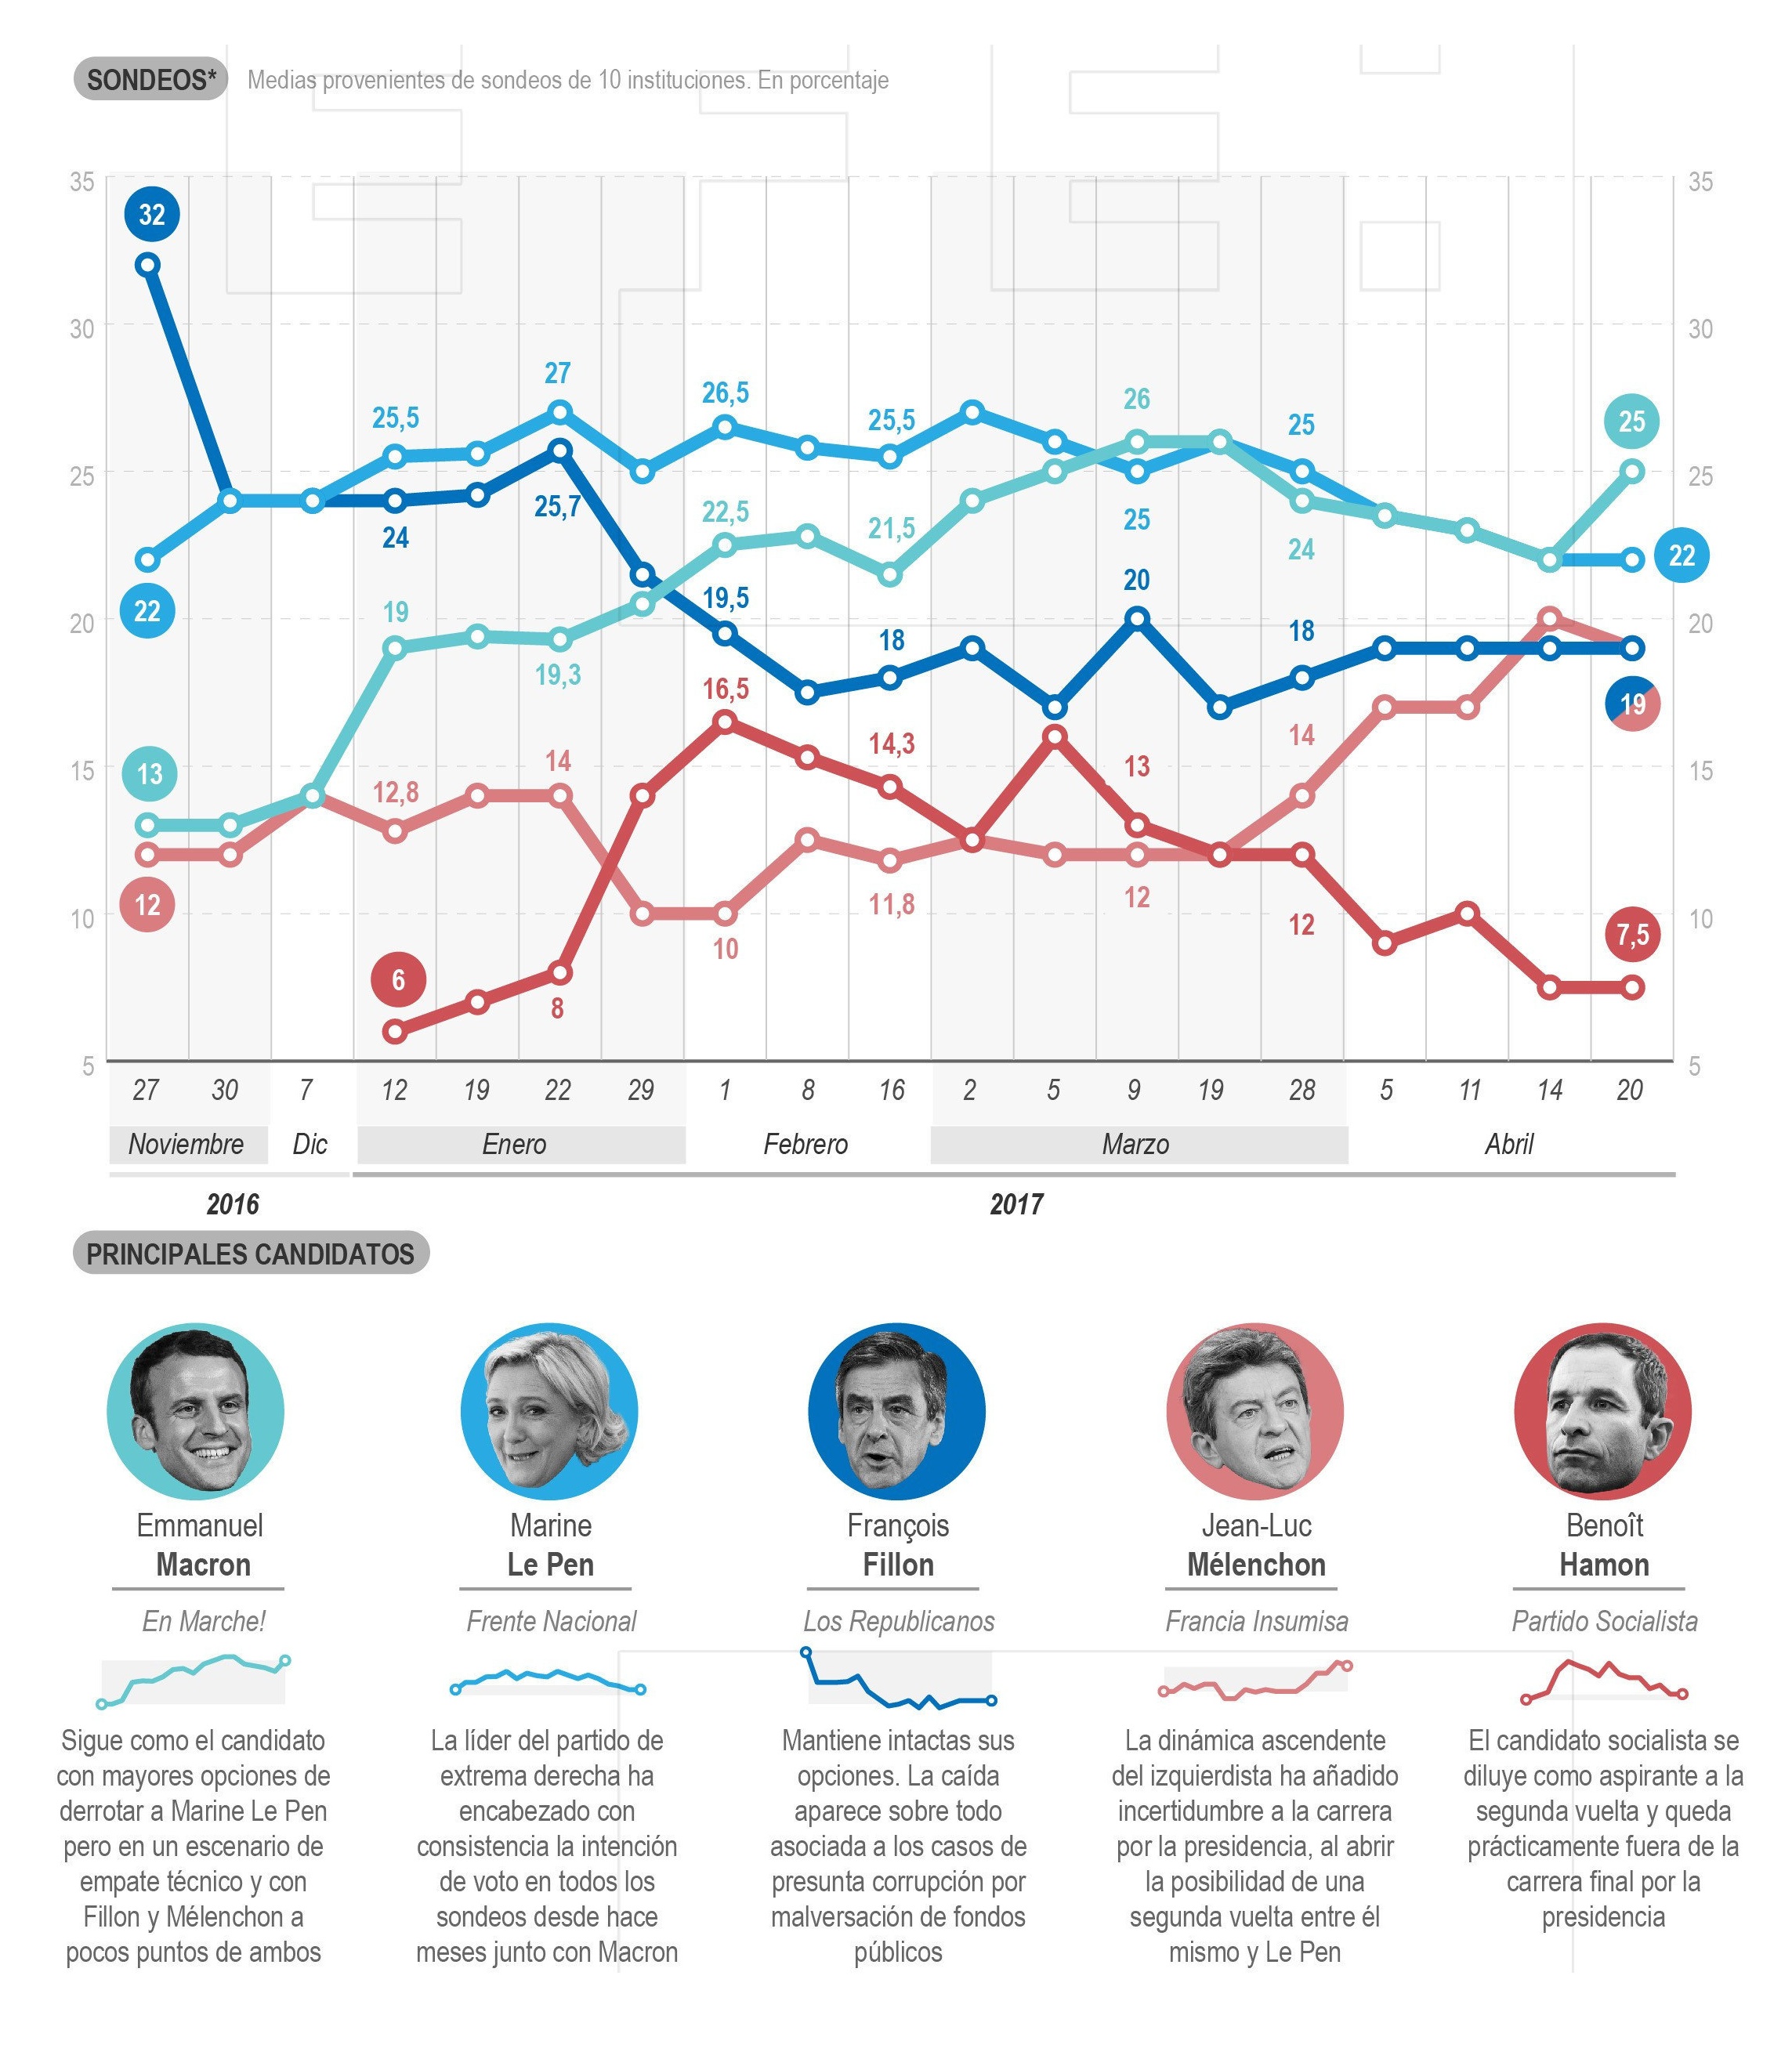 Evolución de los sondeos y principales candidatos en las presidenciales francesas.